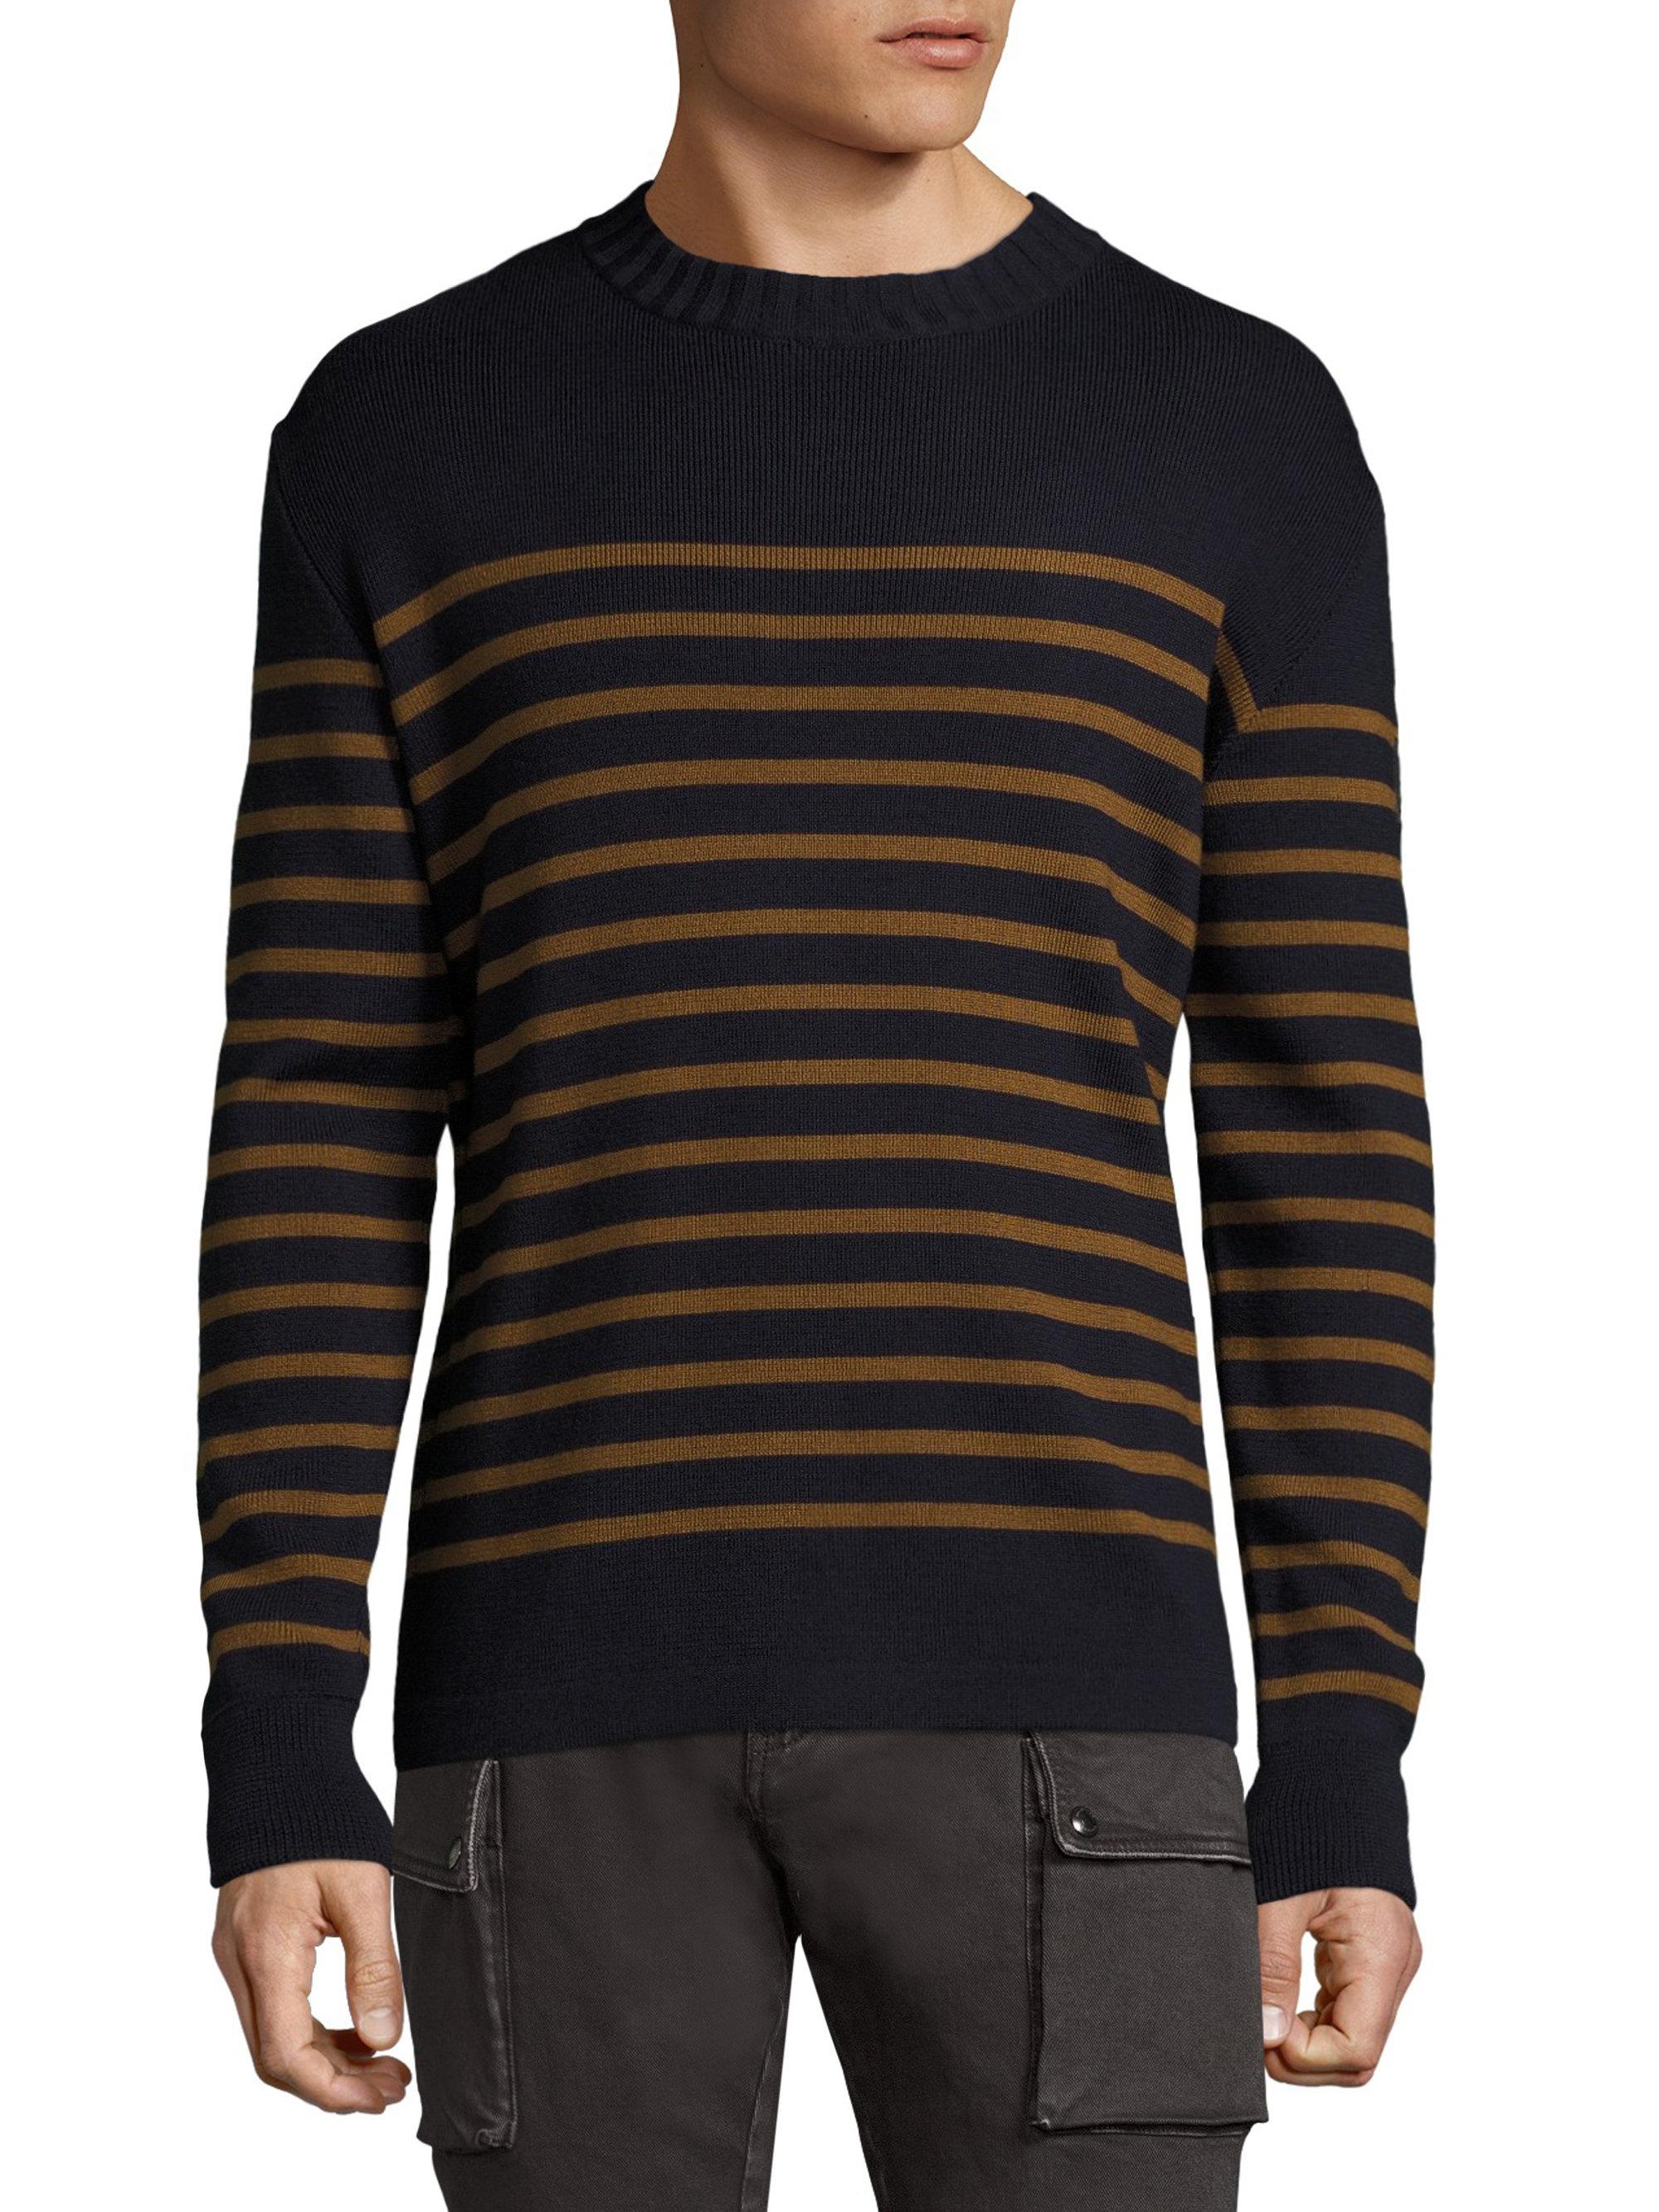 Belstaff Wool Gaynesford Striped Sweater in Blue for Men - Lyst